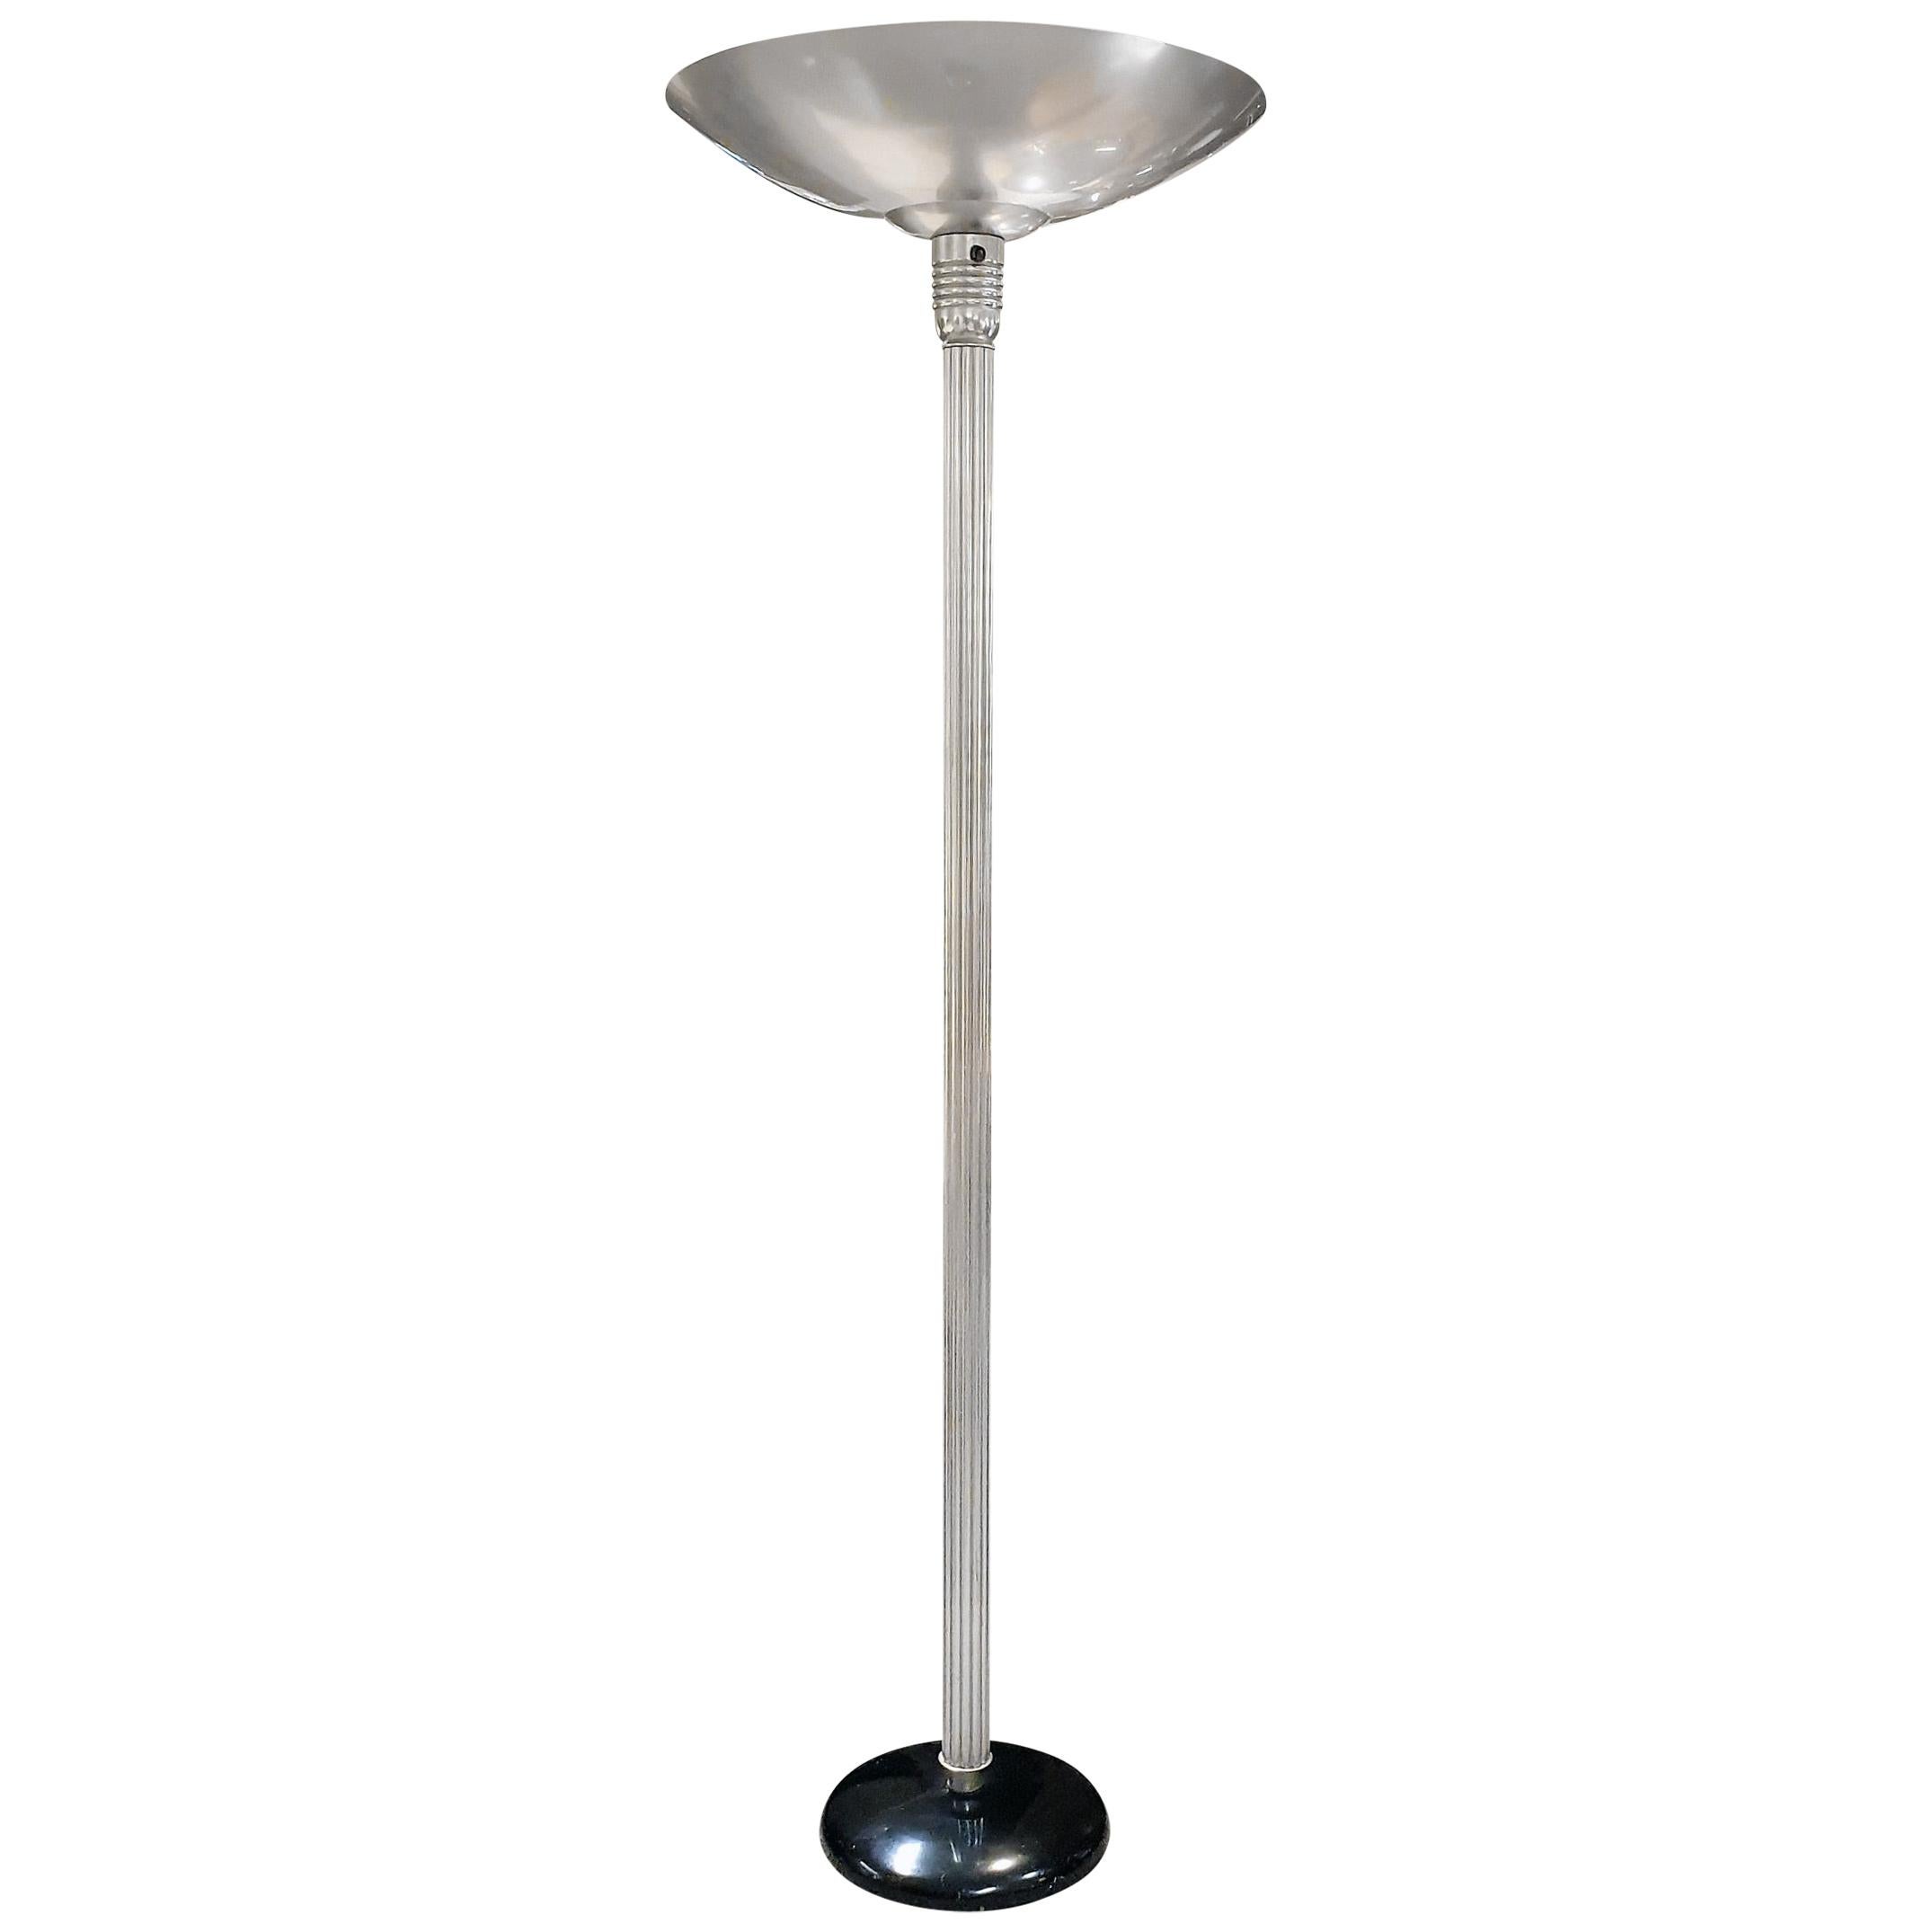 Art Deco Uplighter Floor Lamp For Sale